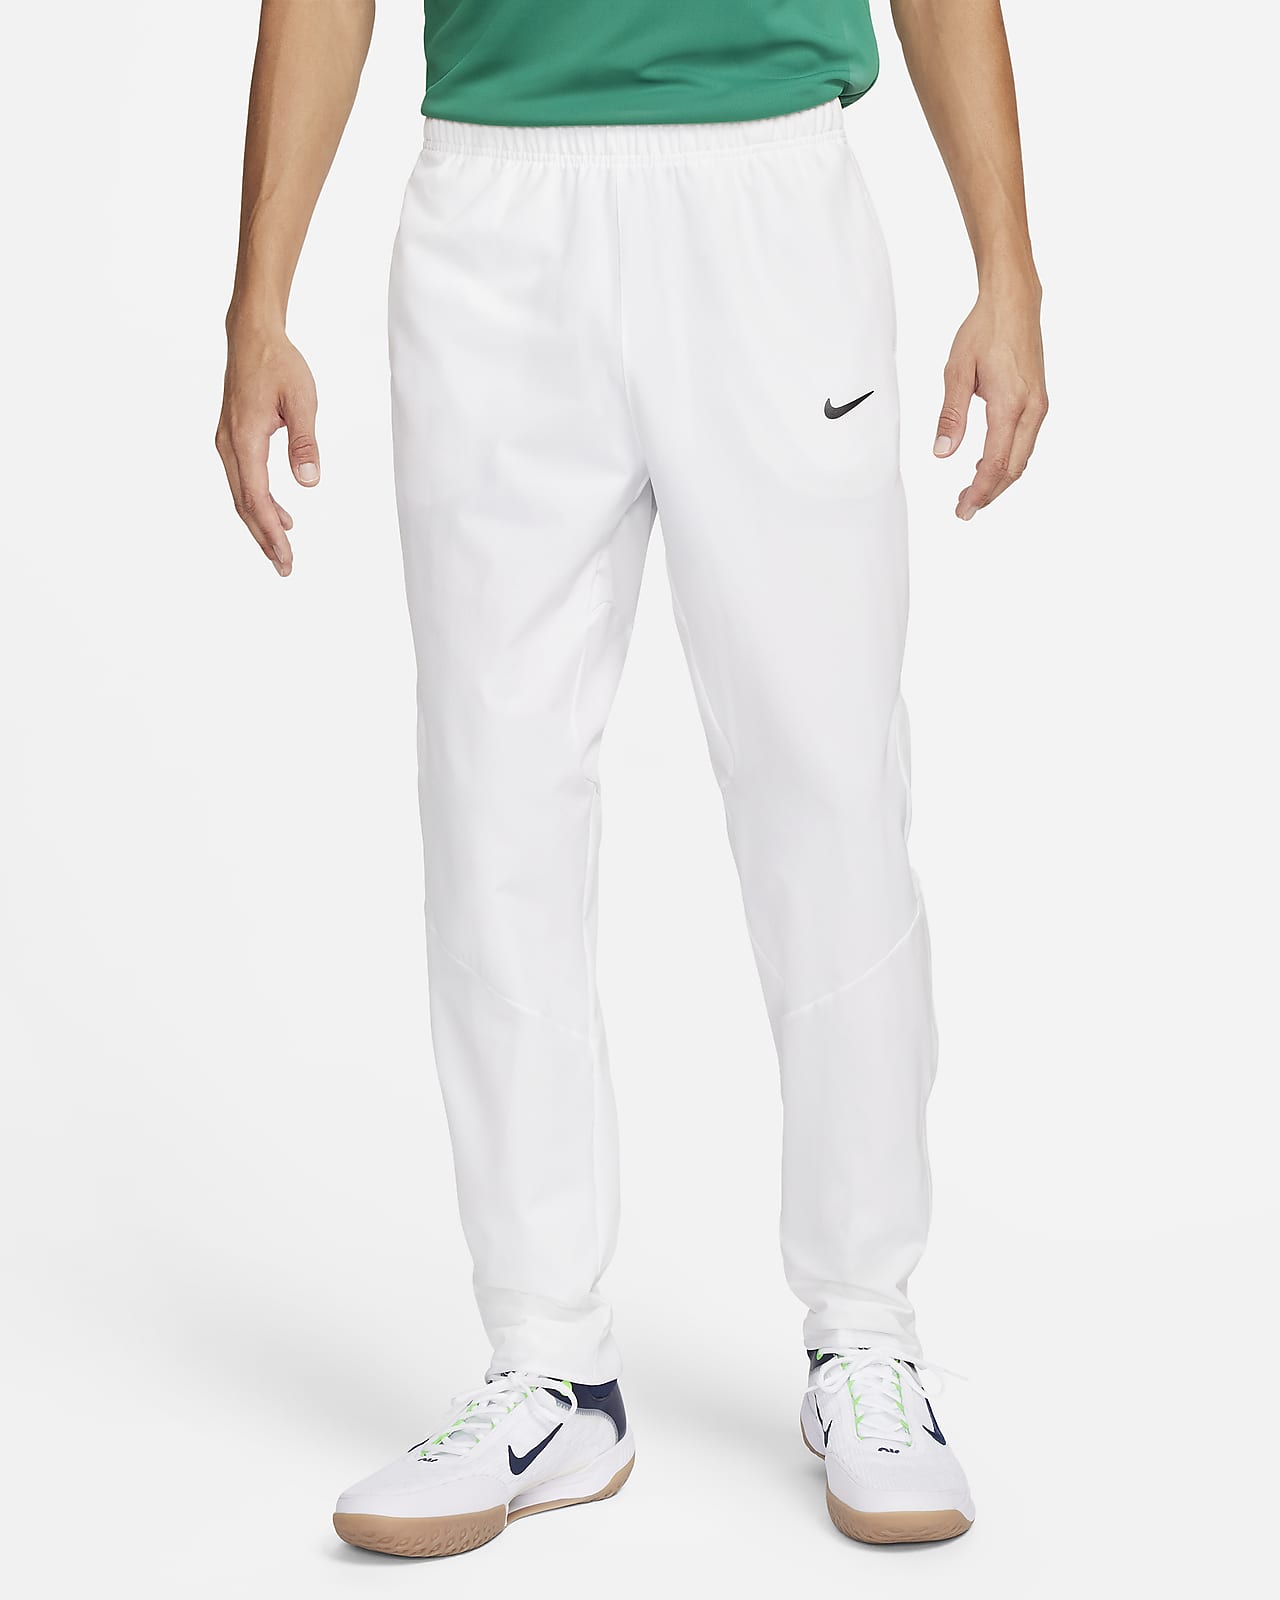 Pantalon de tennis Dri-FIT NikeCourt Advantage pour homme